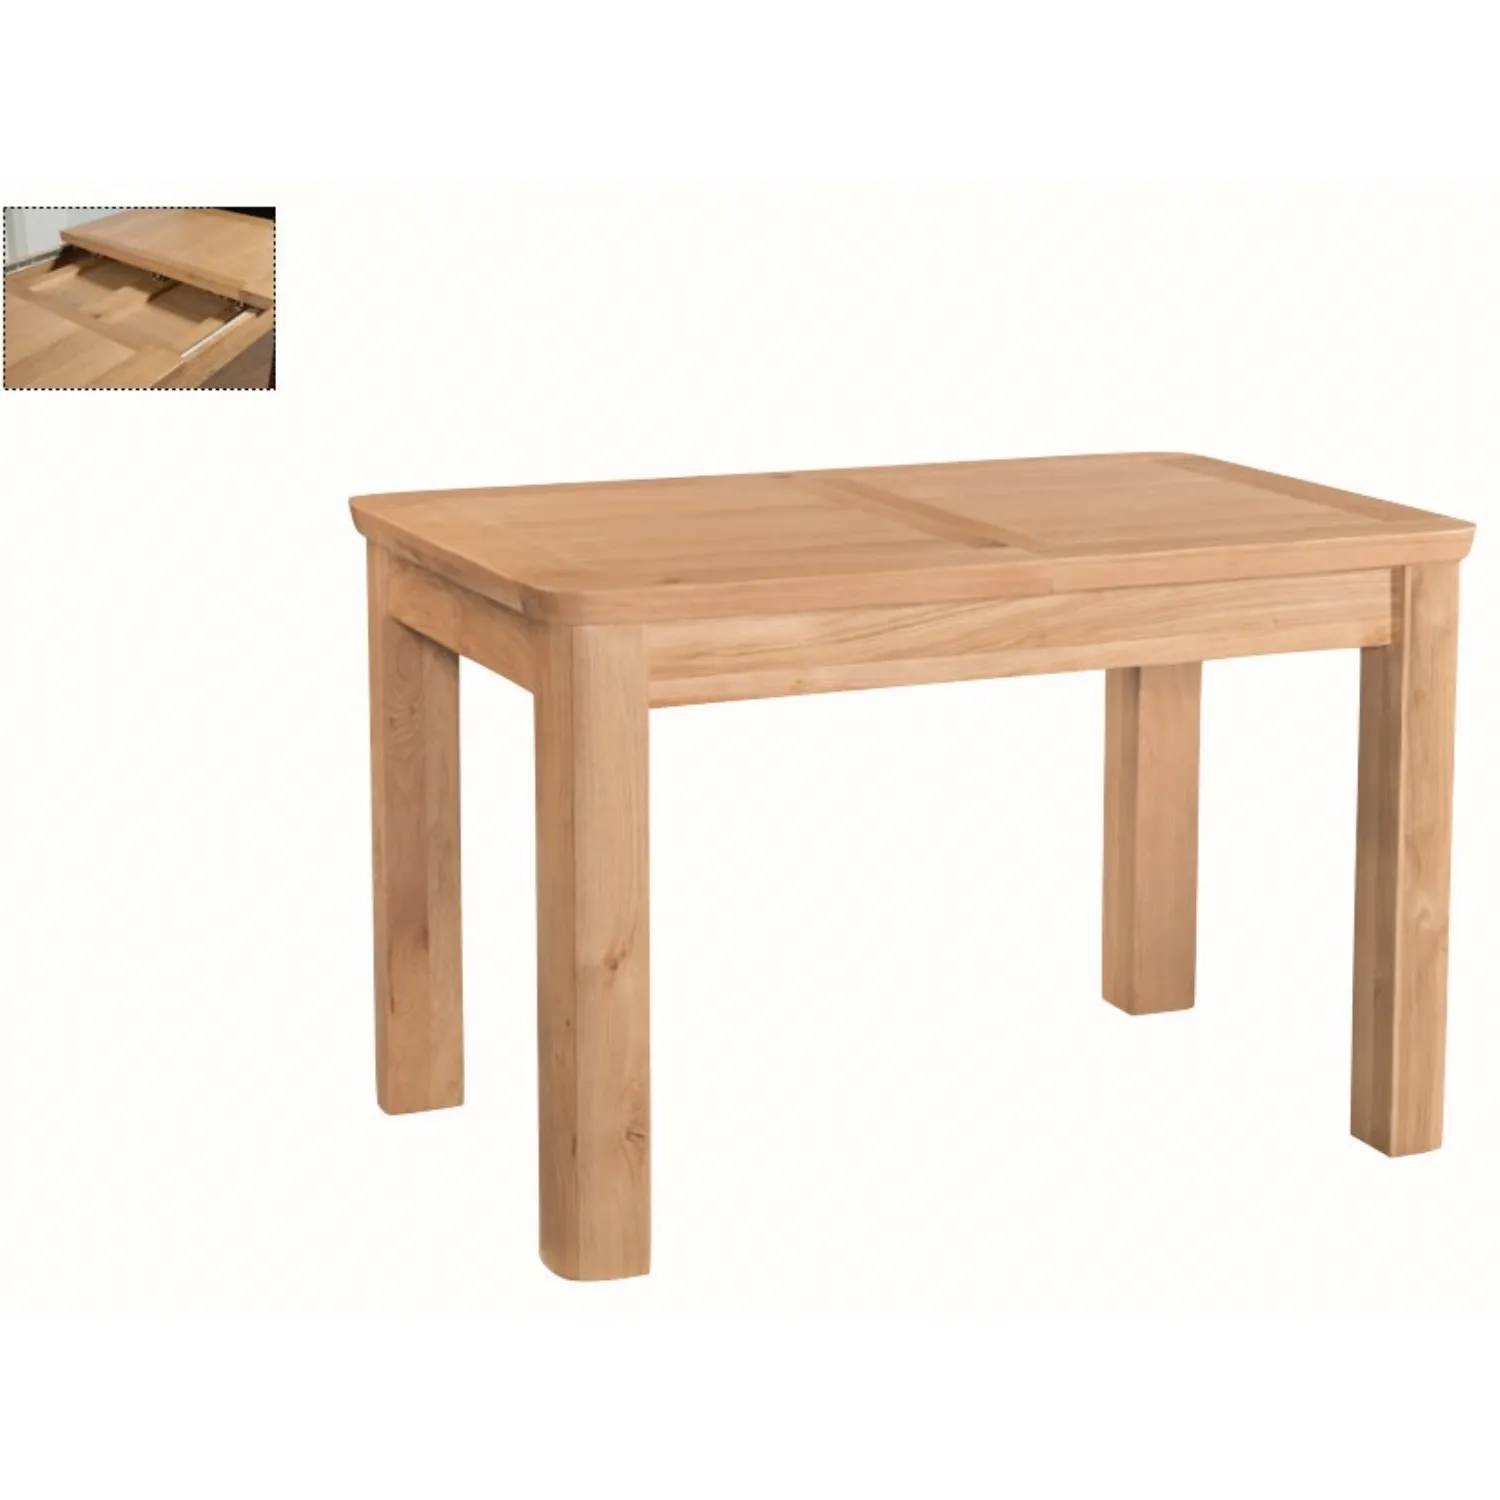 Solid Oak 140cm Extending Table